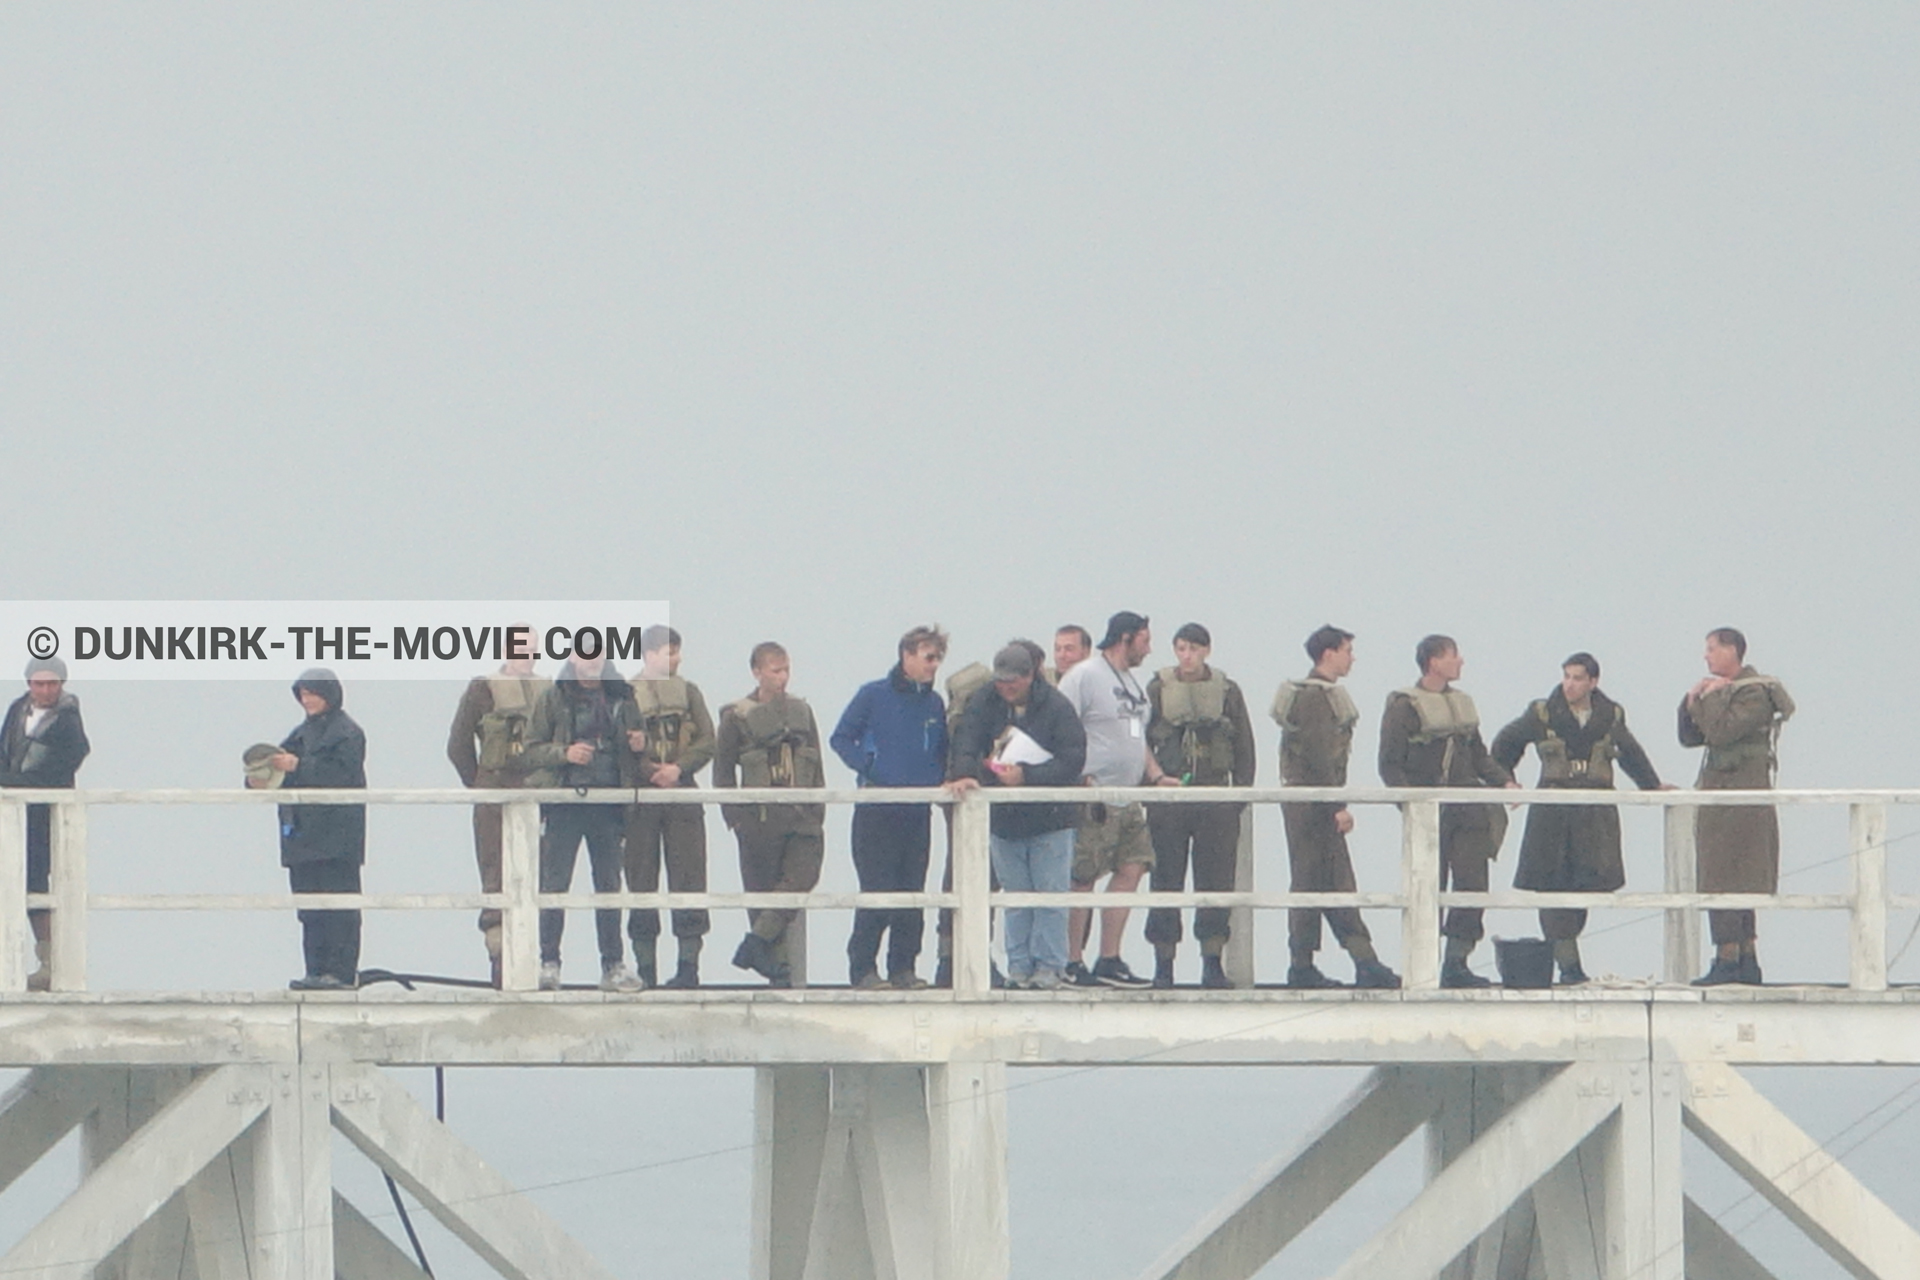 Photo avec ciel gris, figurants, jetée EST, équipe technique,  des dessous du Film Dunkerque de Nolan